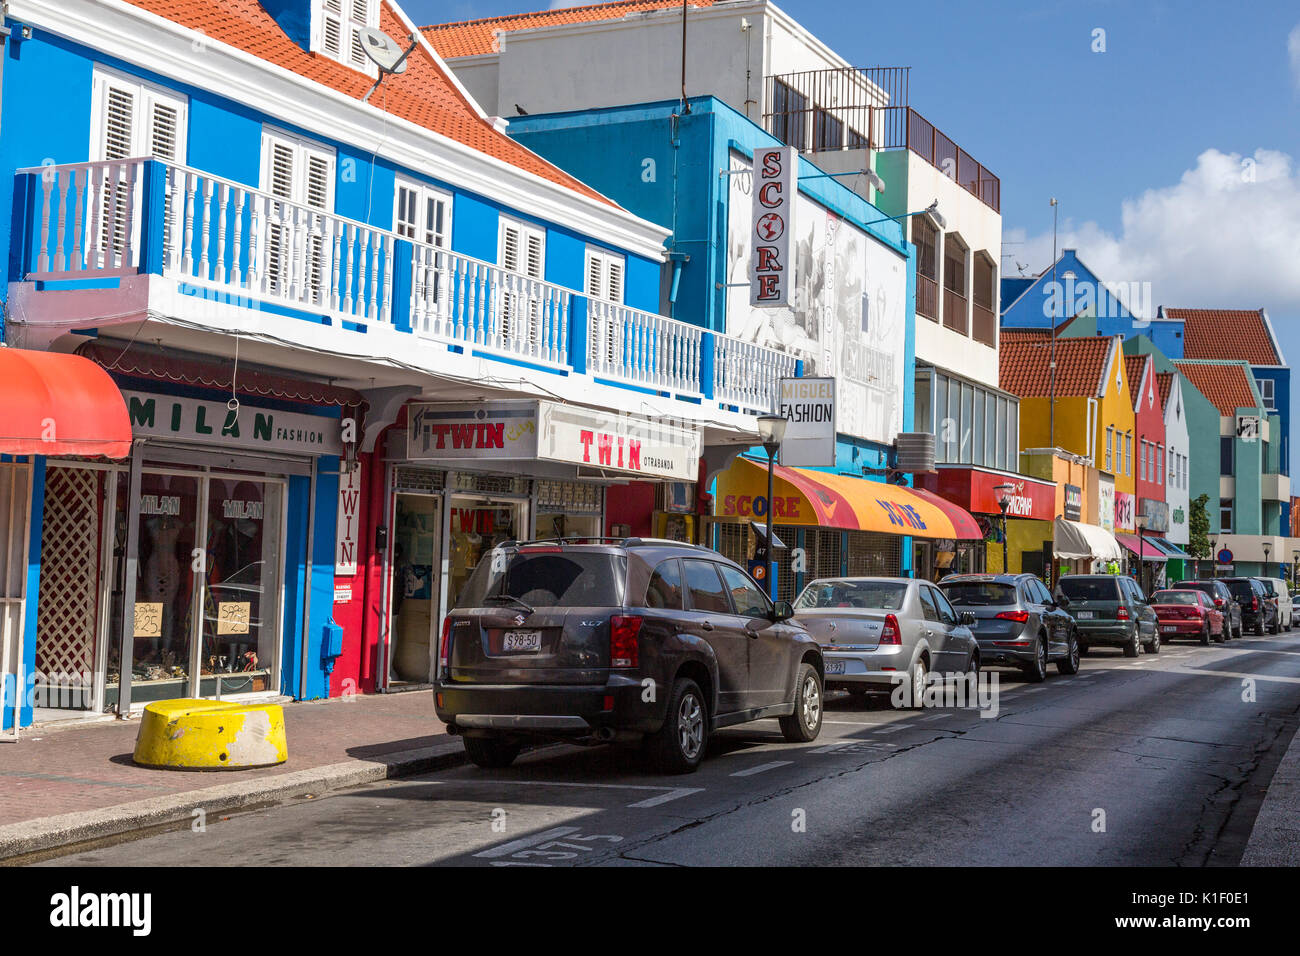 Willemstad, Curacao, Kleinen Antillen. Breedestraat Street Scene. Stockfoto